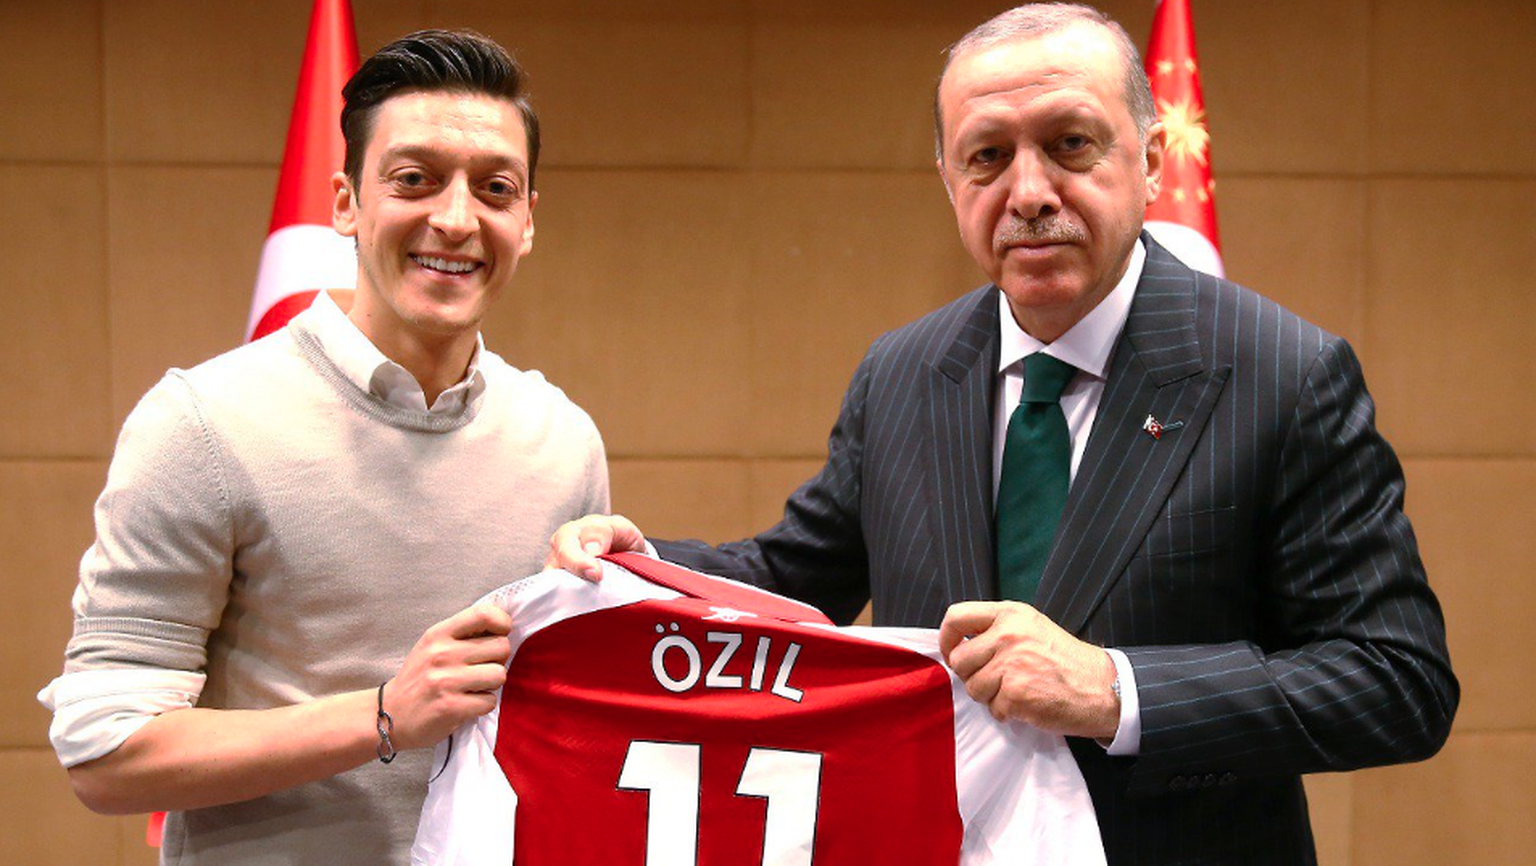 Strahlt mit dem Präsidenten: Özil überreicht Erdogan ein Arsenal-Shirt.